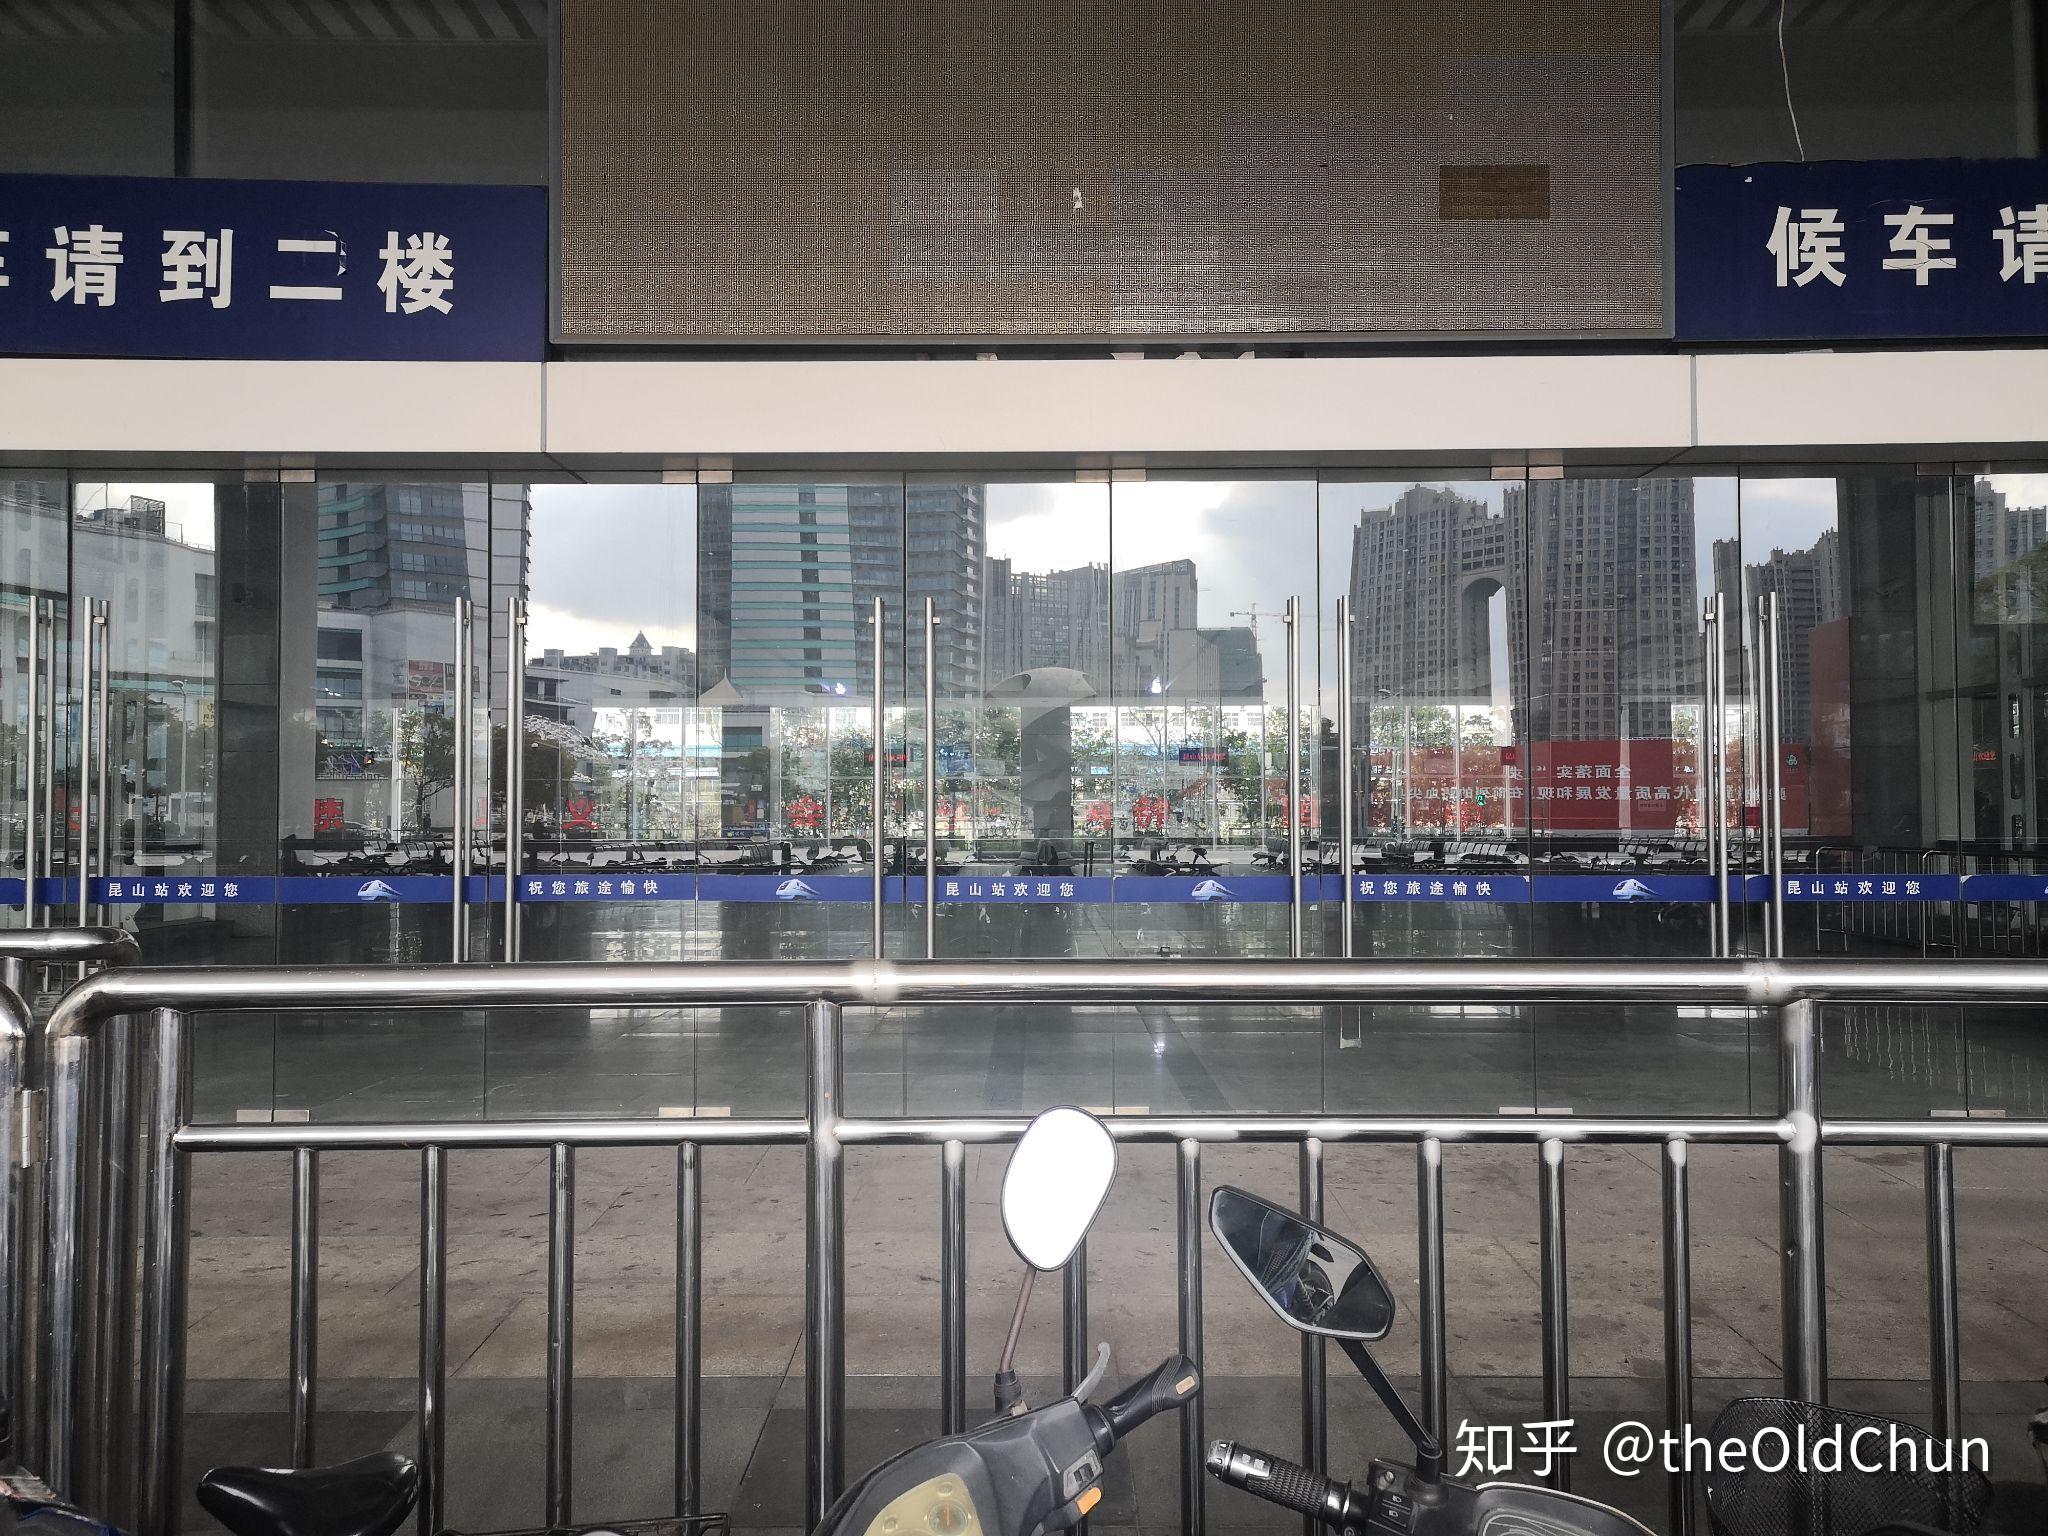 昆山站南站房共有两层,网上资料显示,一楼作为上行(往南京方向)候车室